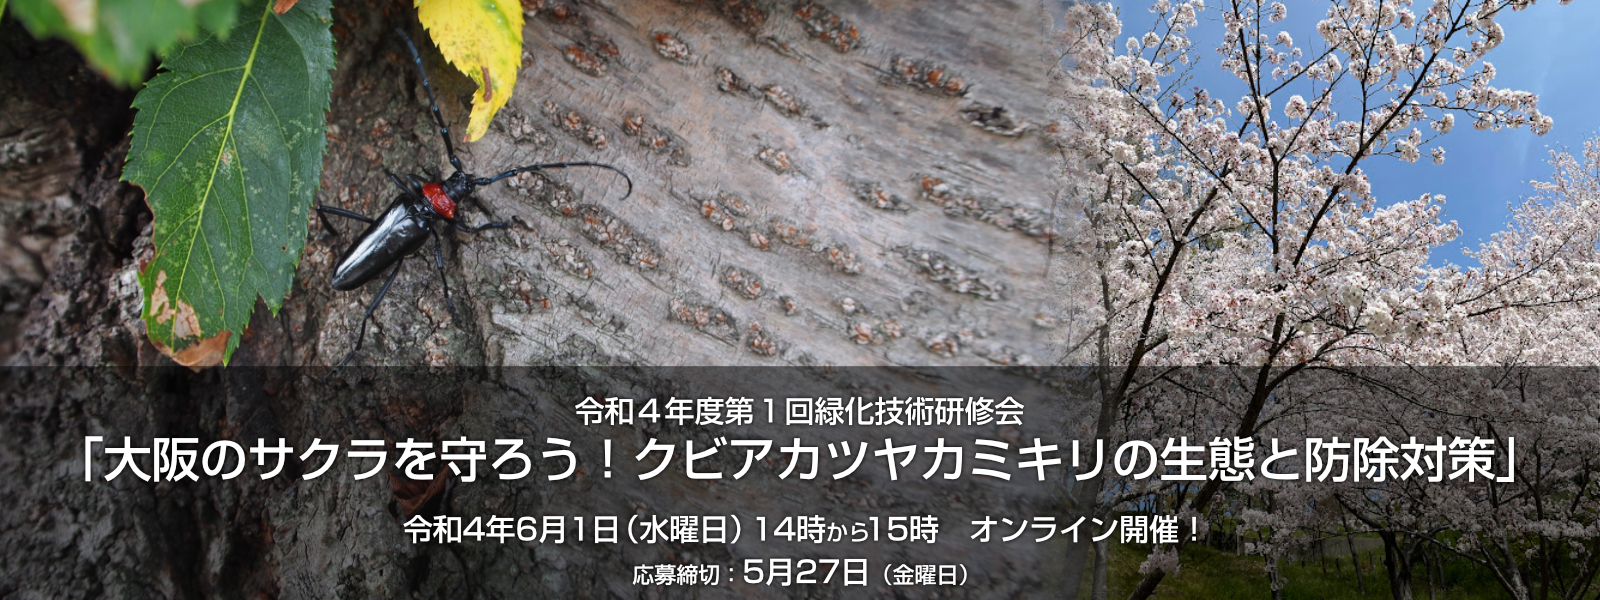 令和４年度第１回緑化技術研修会「大阪のサクラを守ろう！クビアカツヤカミキリの生態と防除対策」